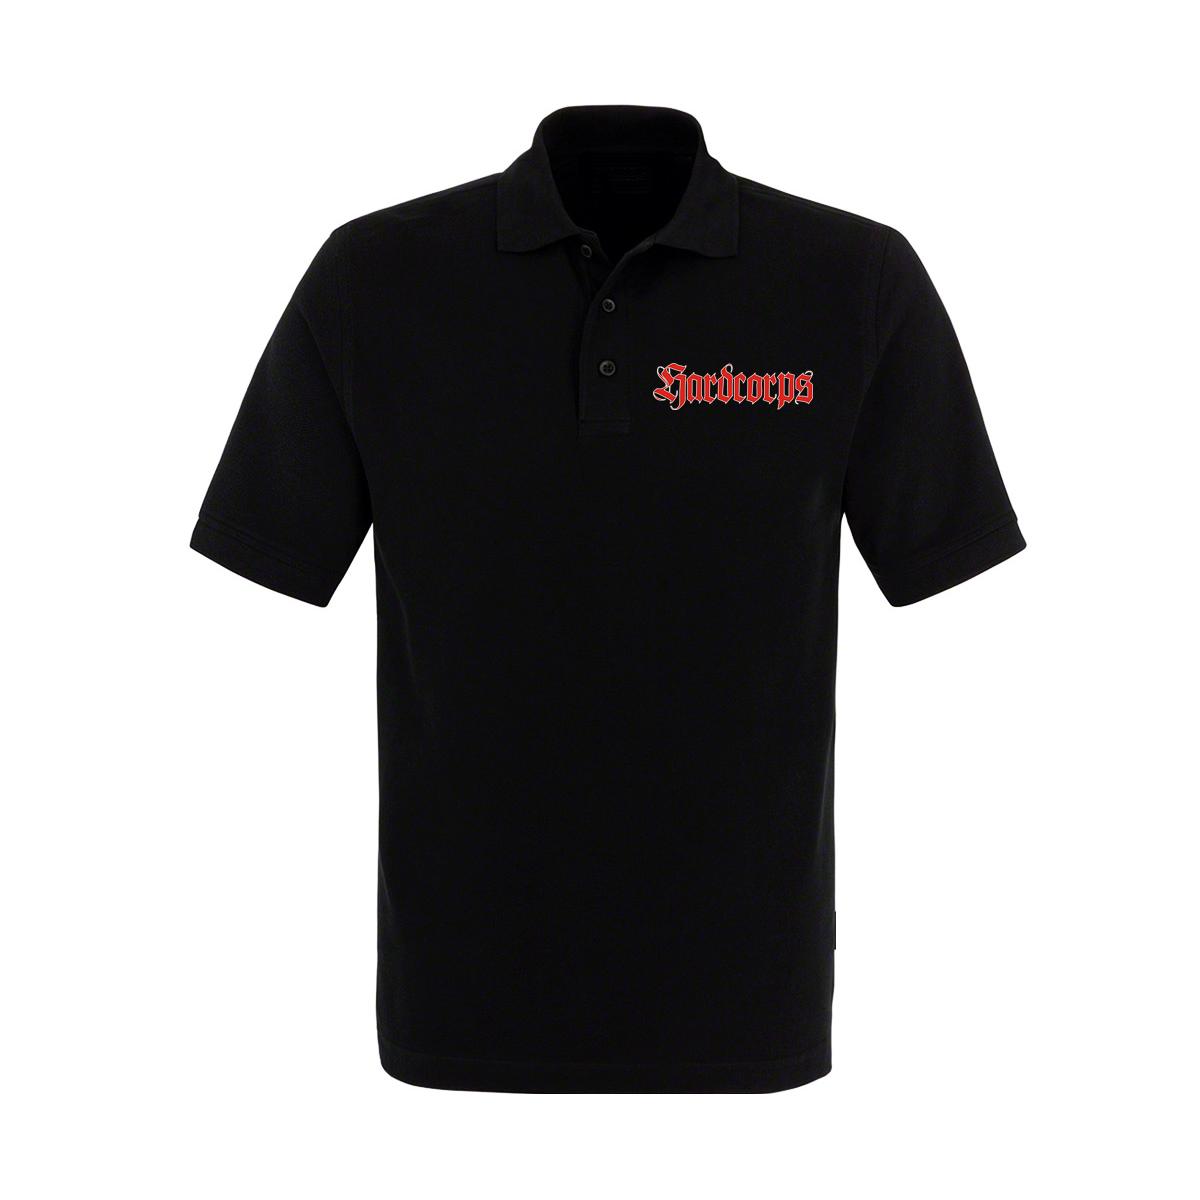 Hardcorps - Männer Polo Shirt - In jeder Sprache Schlagring - schwarz